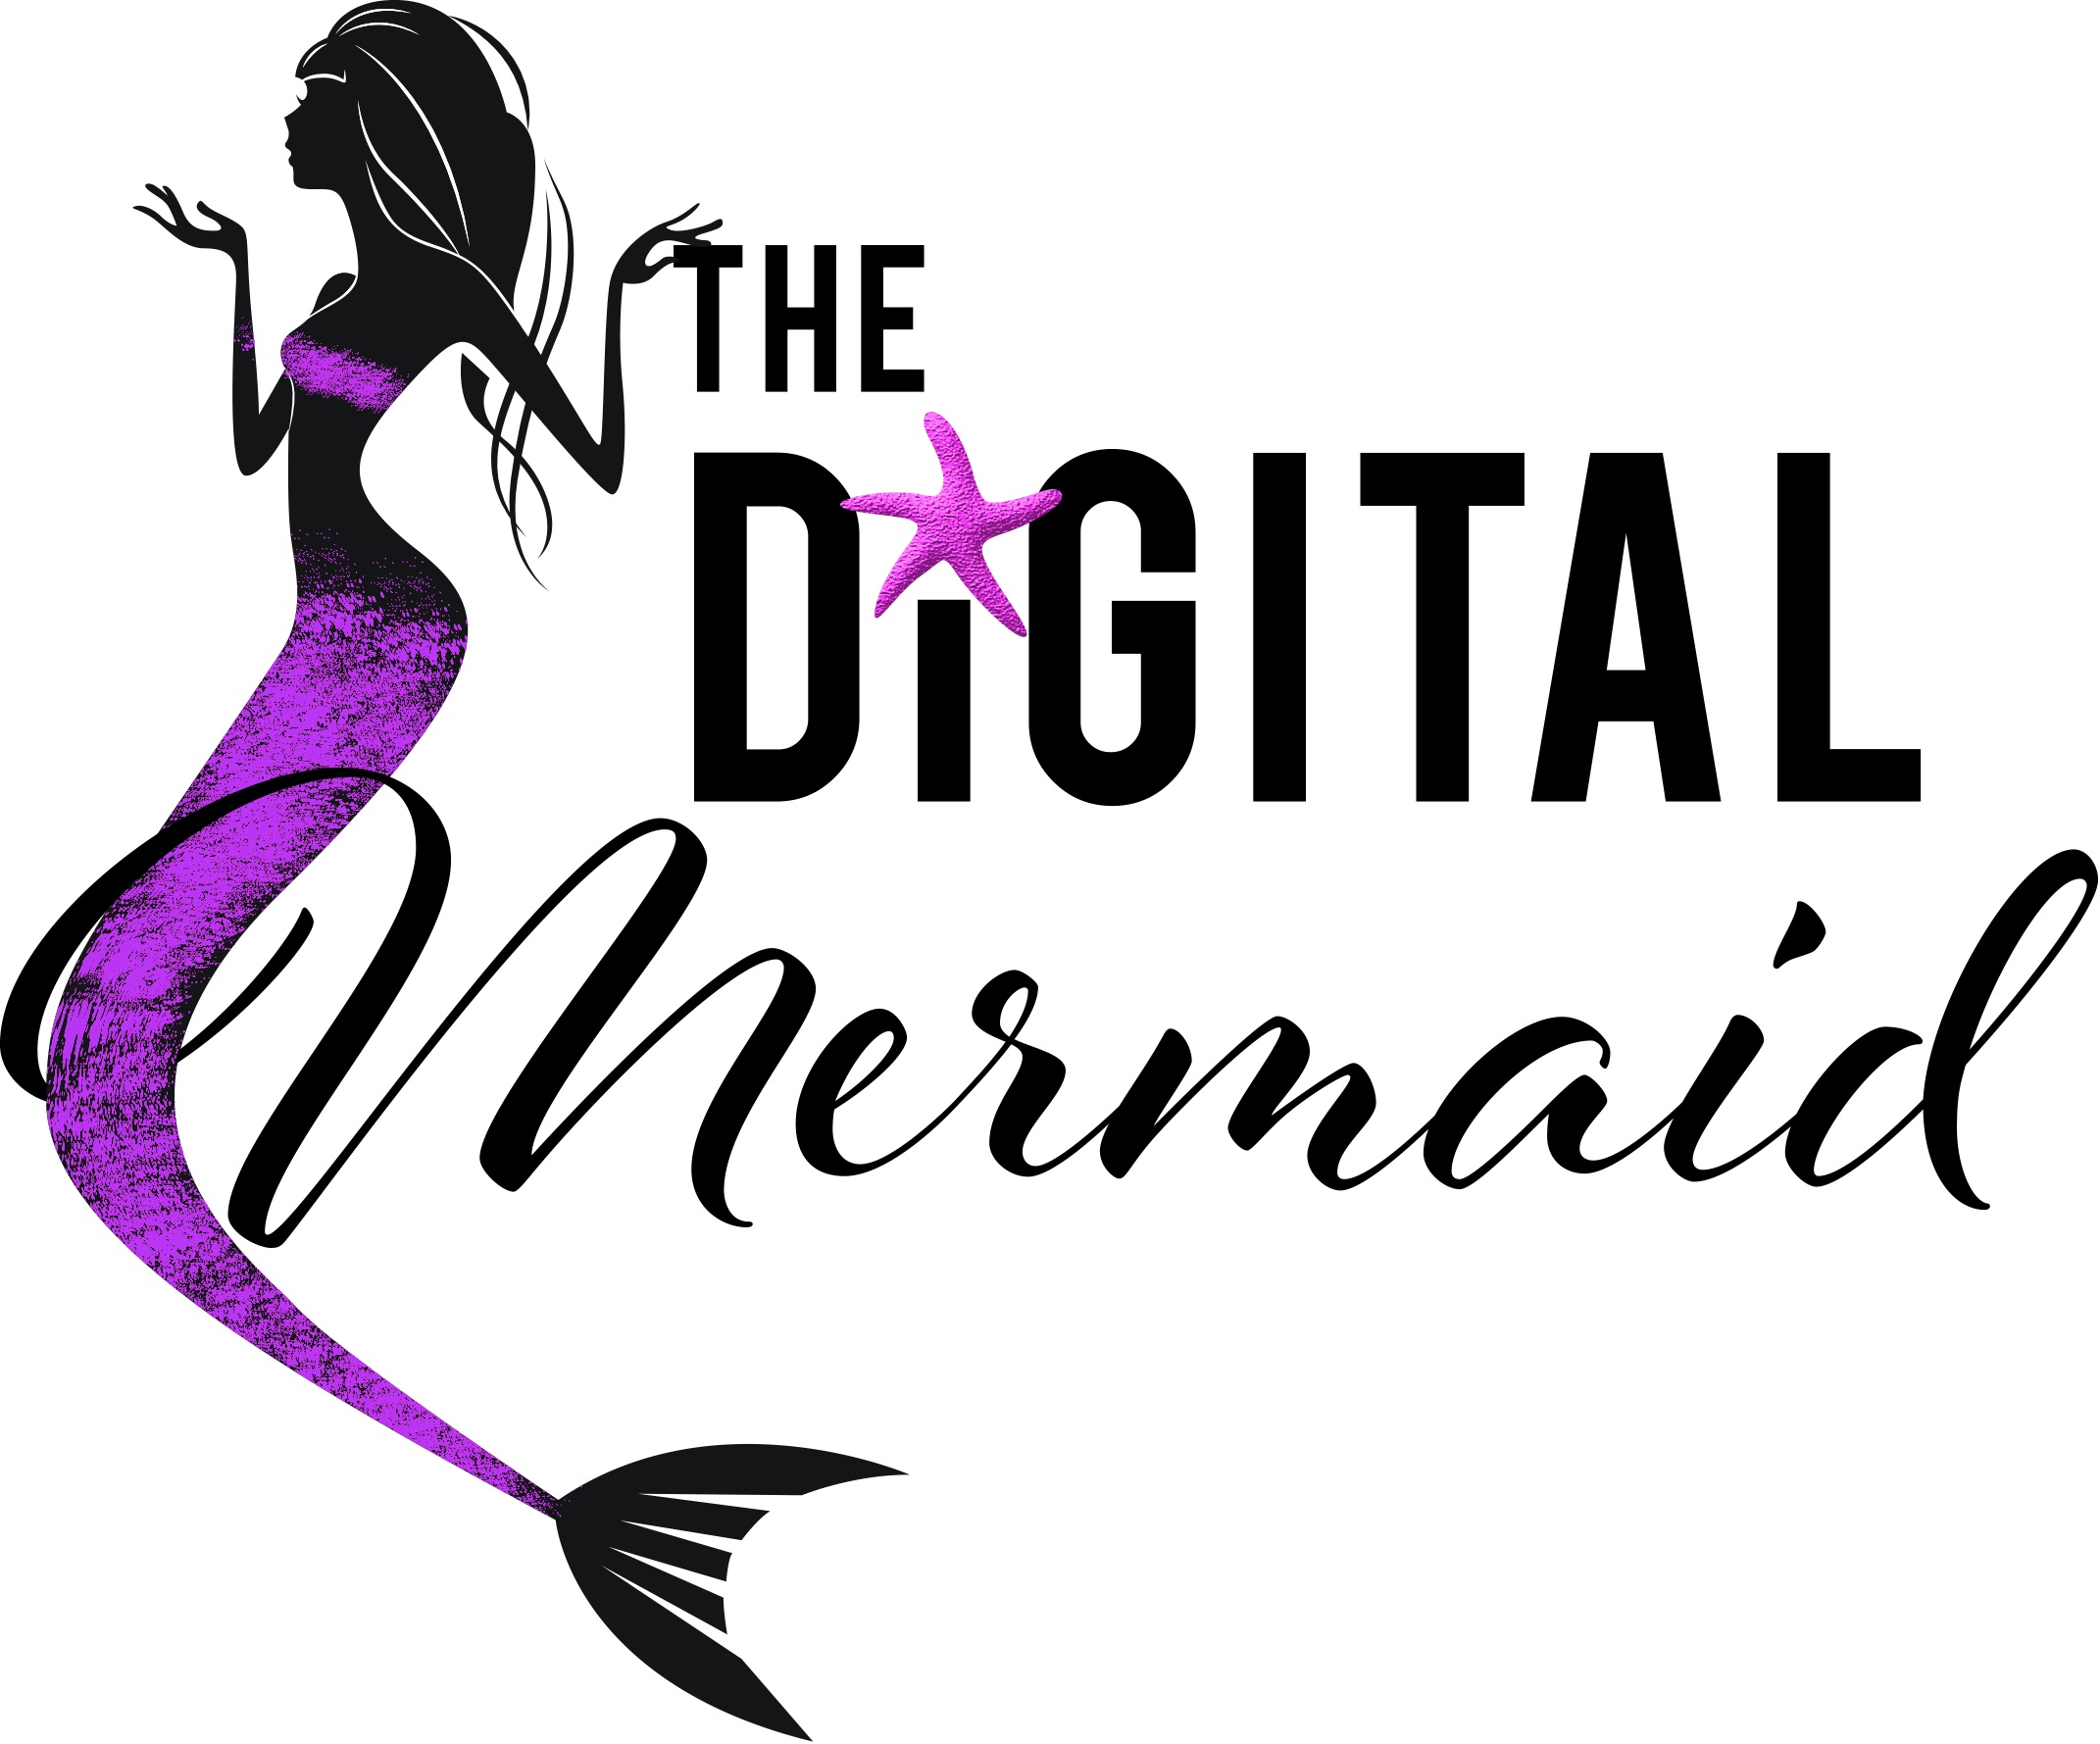 The Digital Mermaid